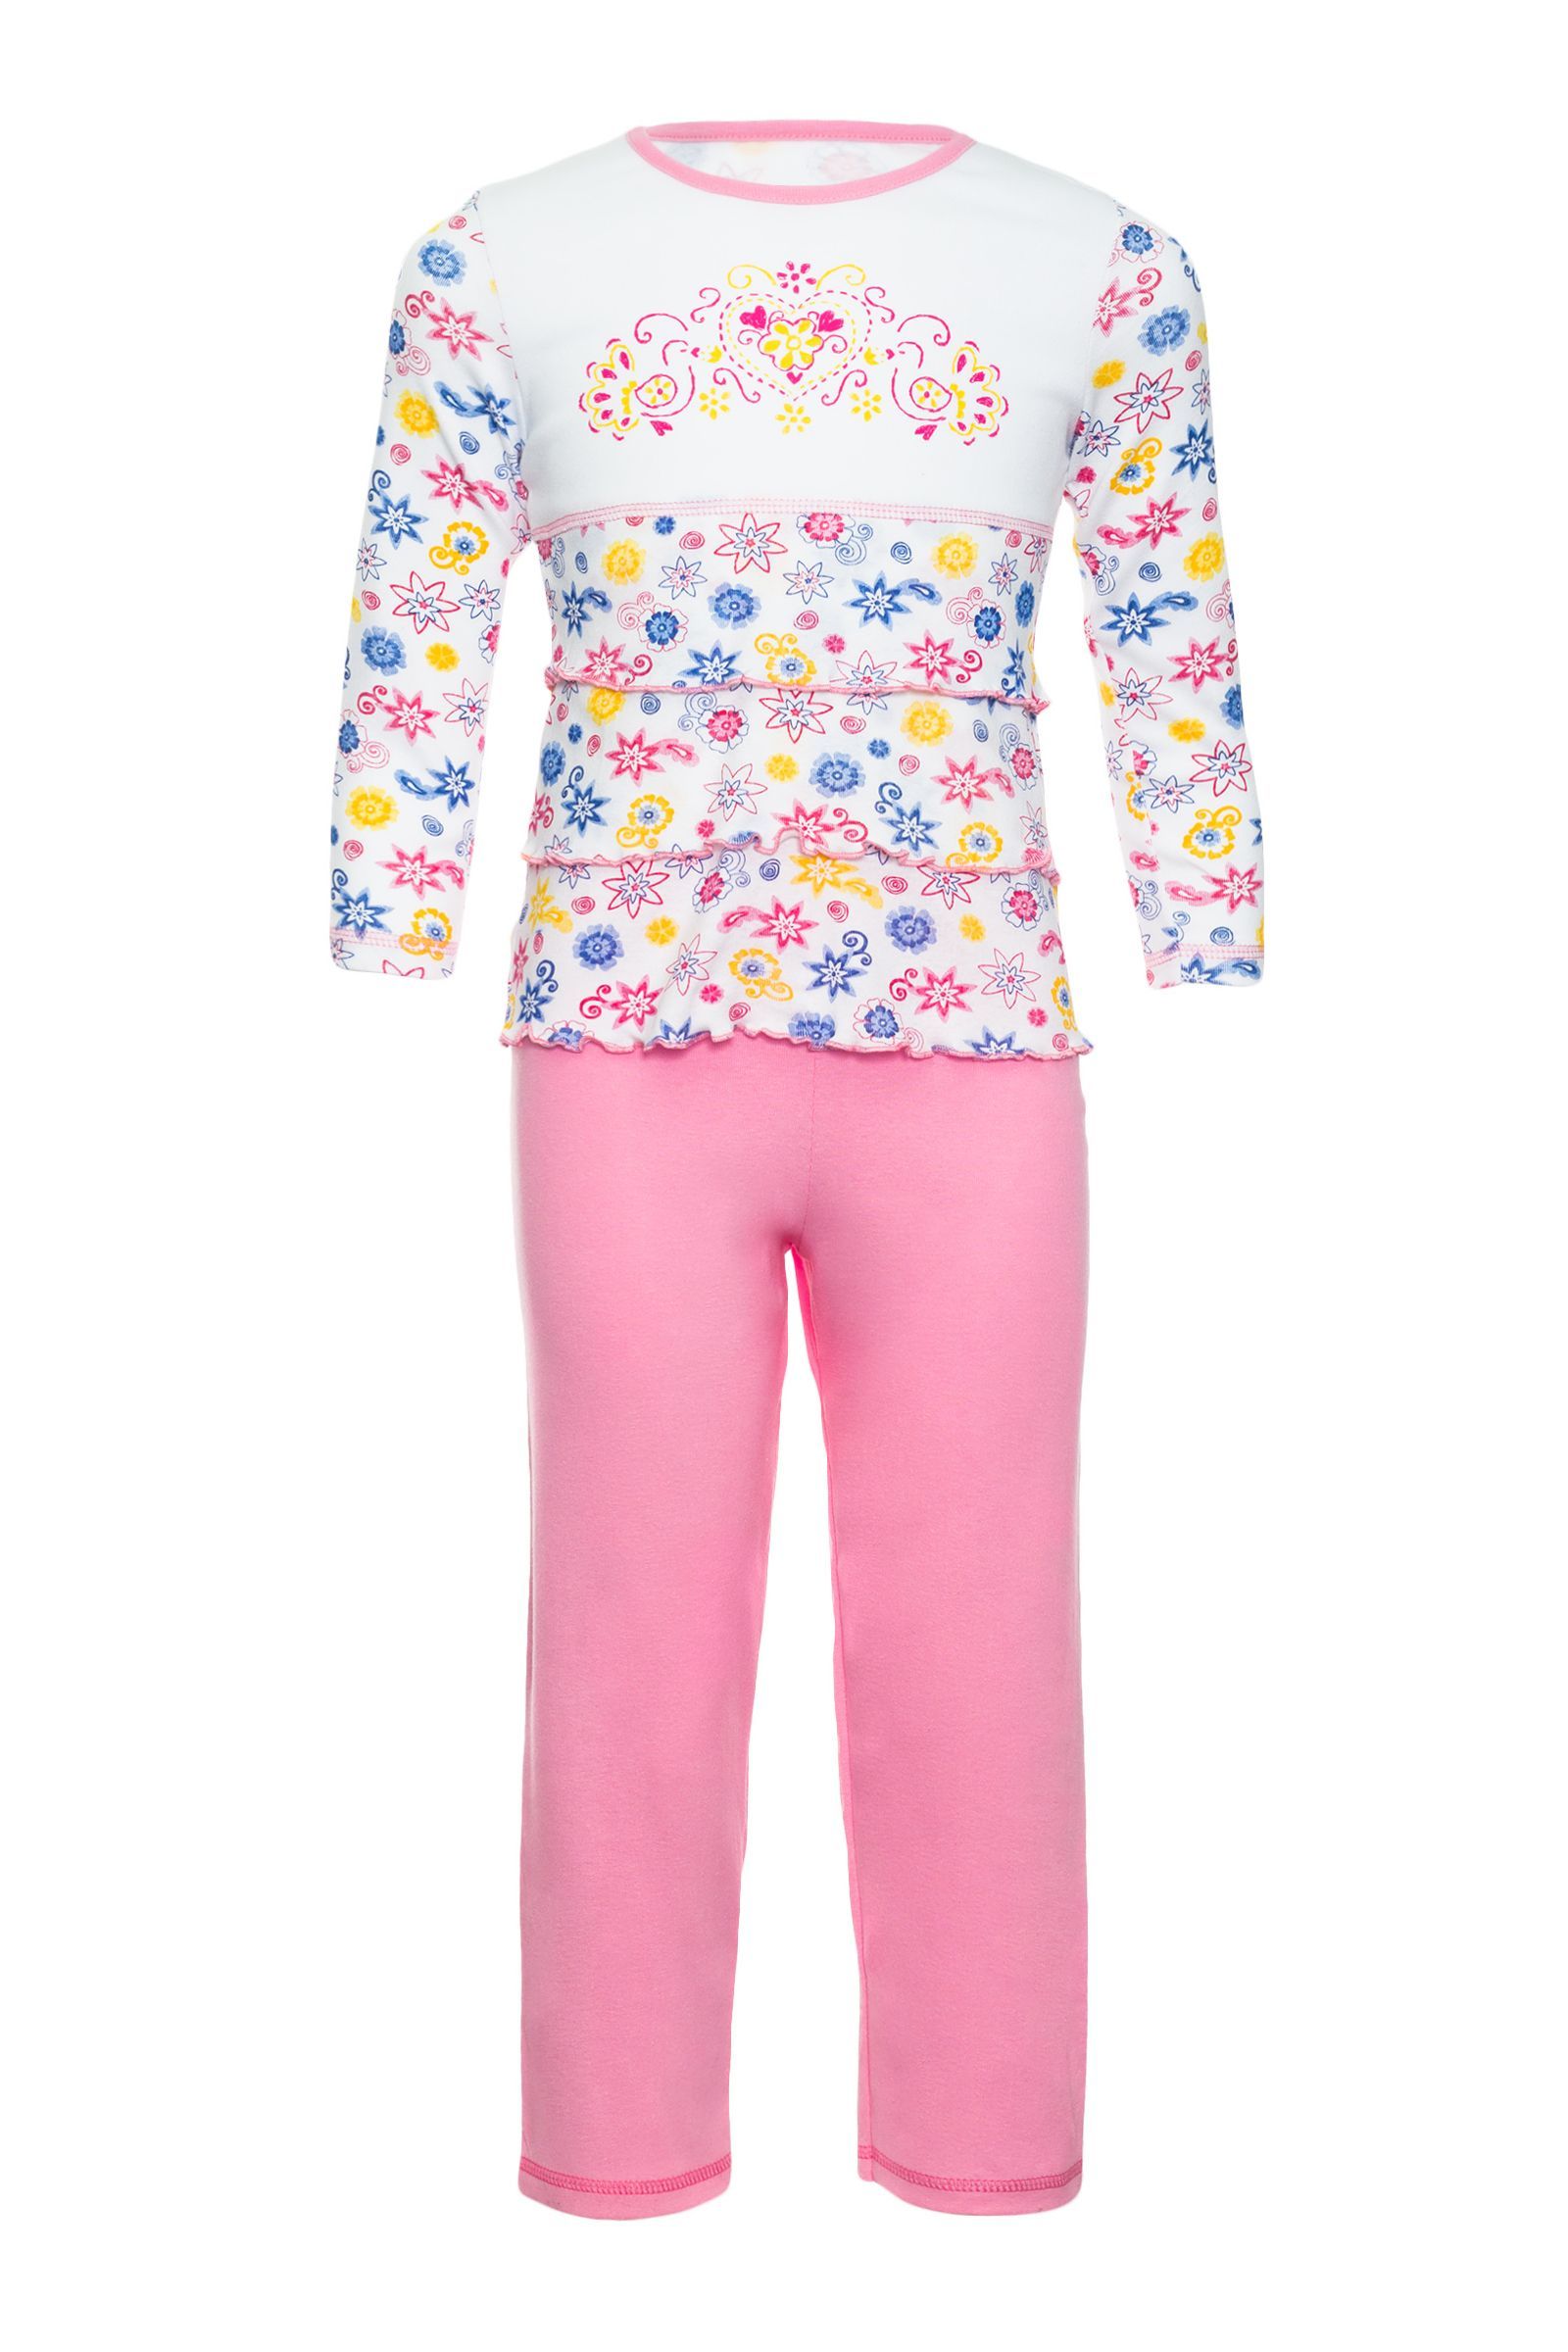 Пижама-ПЖ03-1241 оптом от производителя детской одежды 'Алёна'